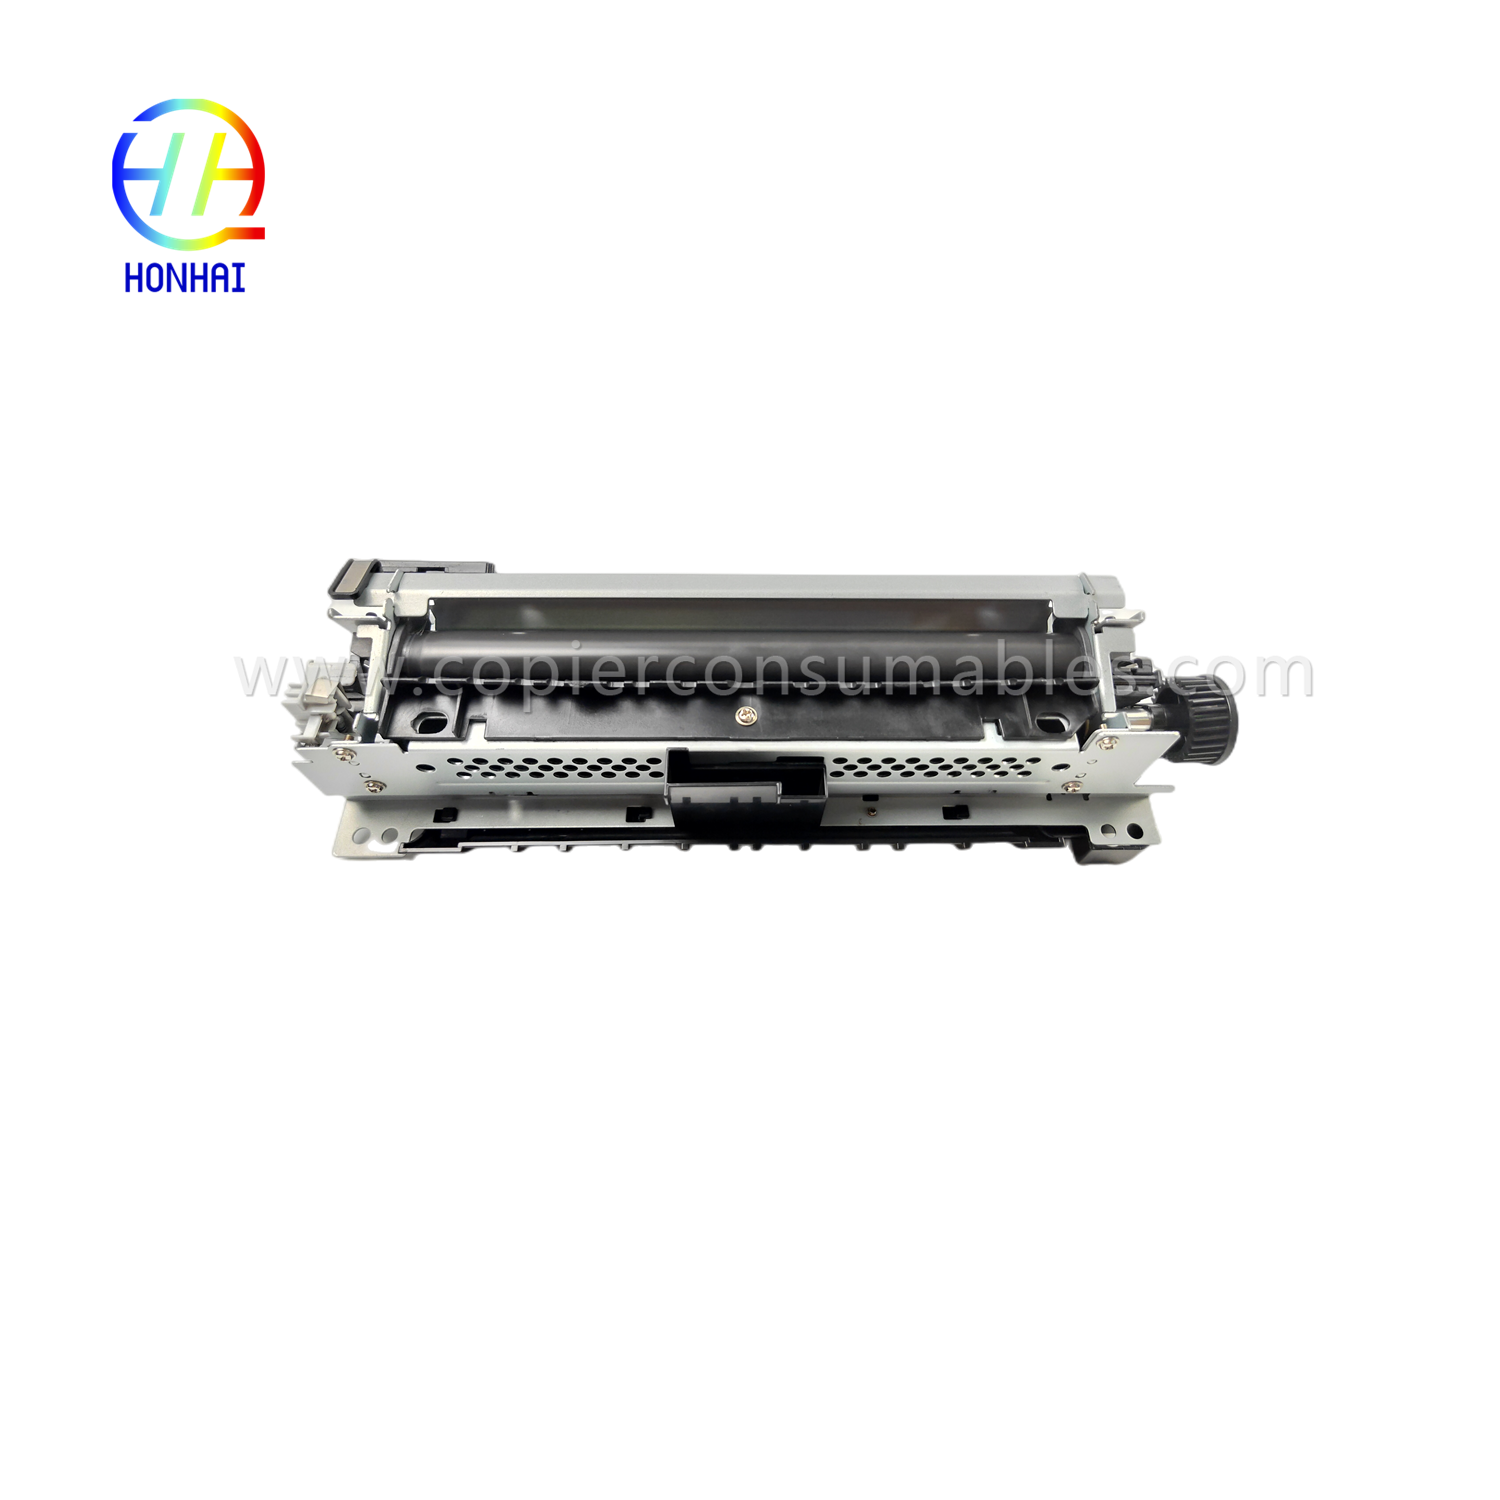 hp-521-525-m521-m525-rm1-8508-rm1-8508-000-fuser-unit-product/